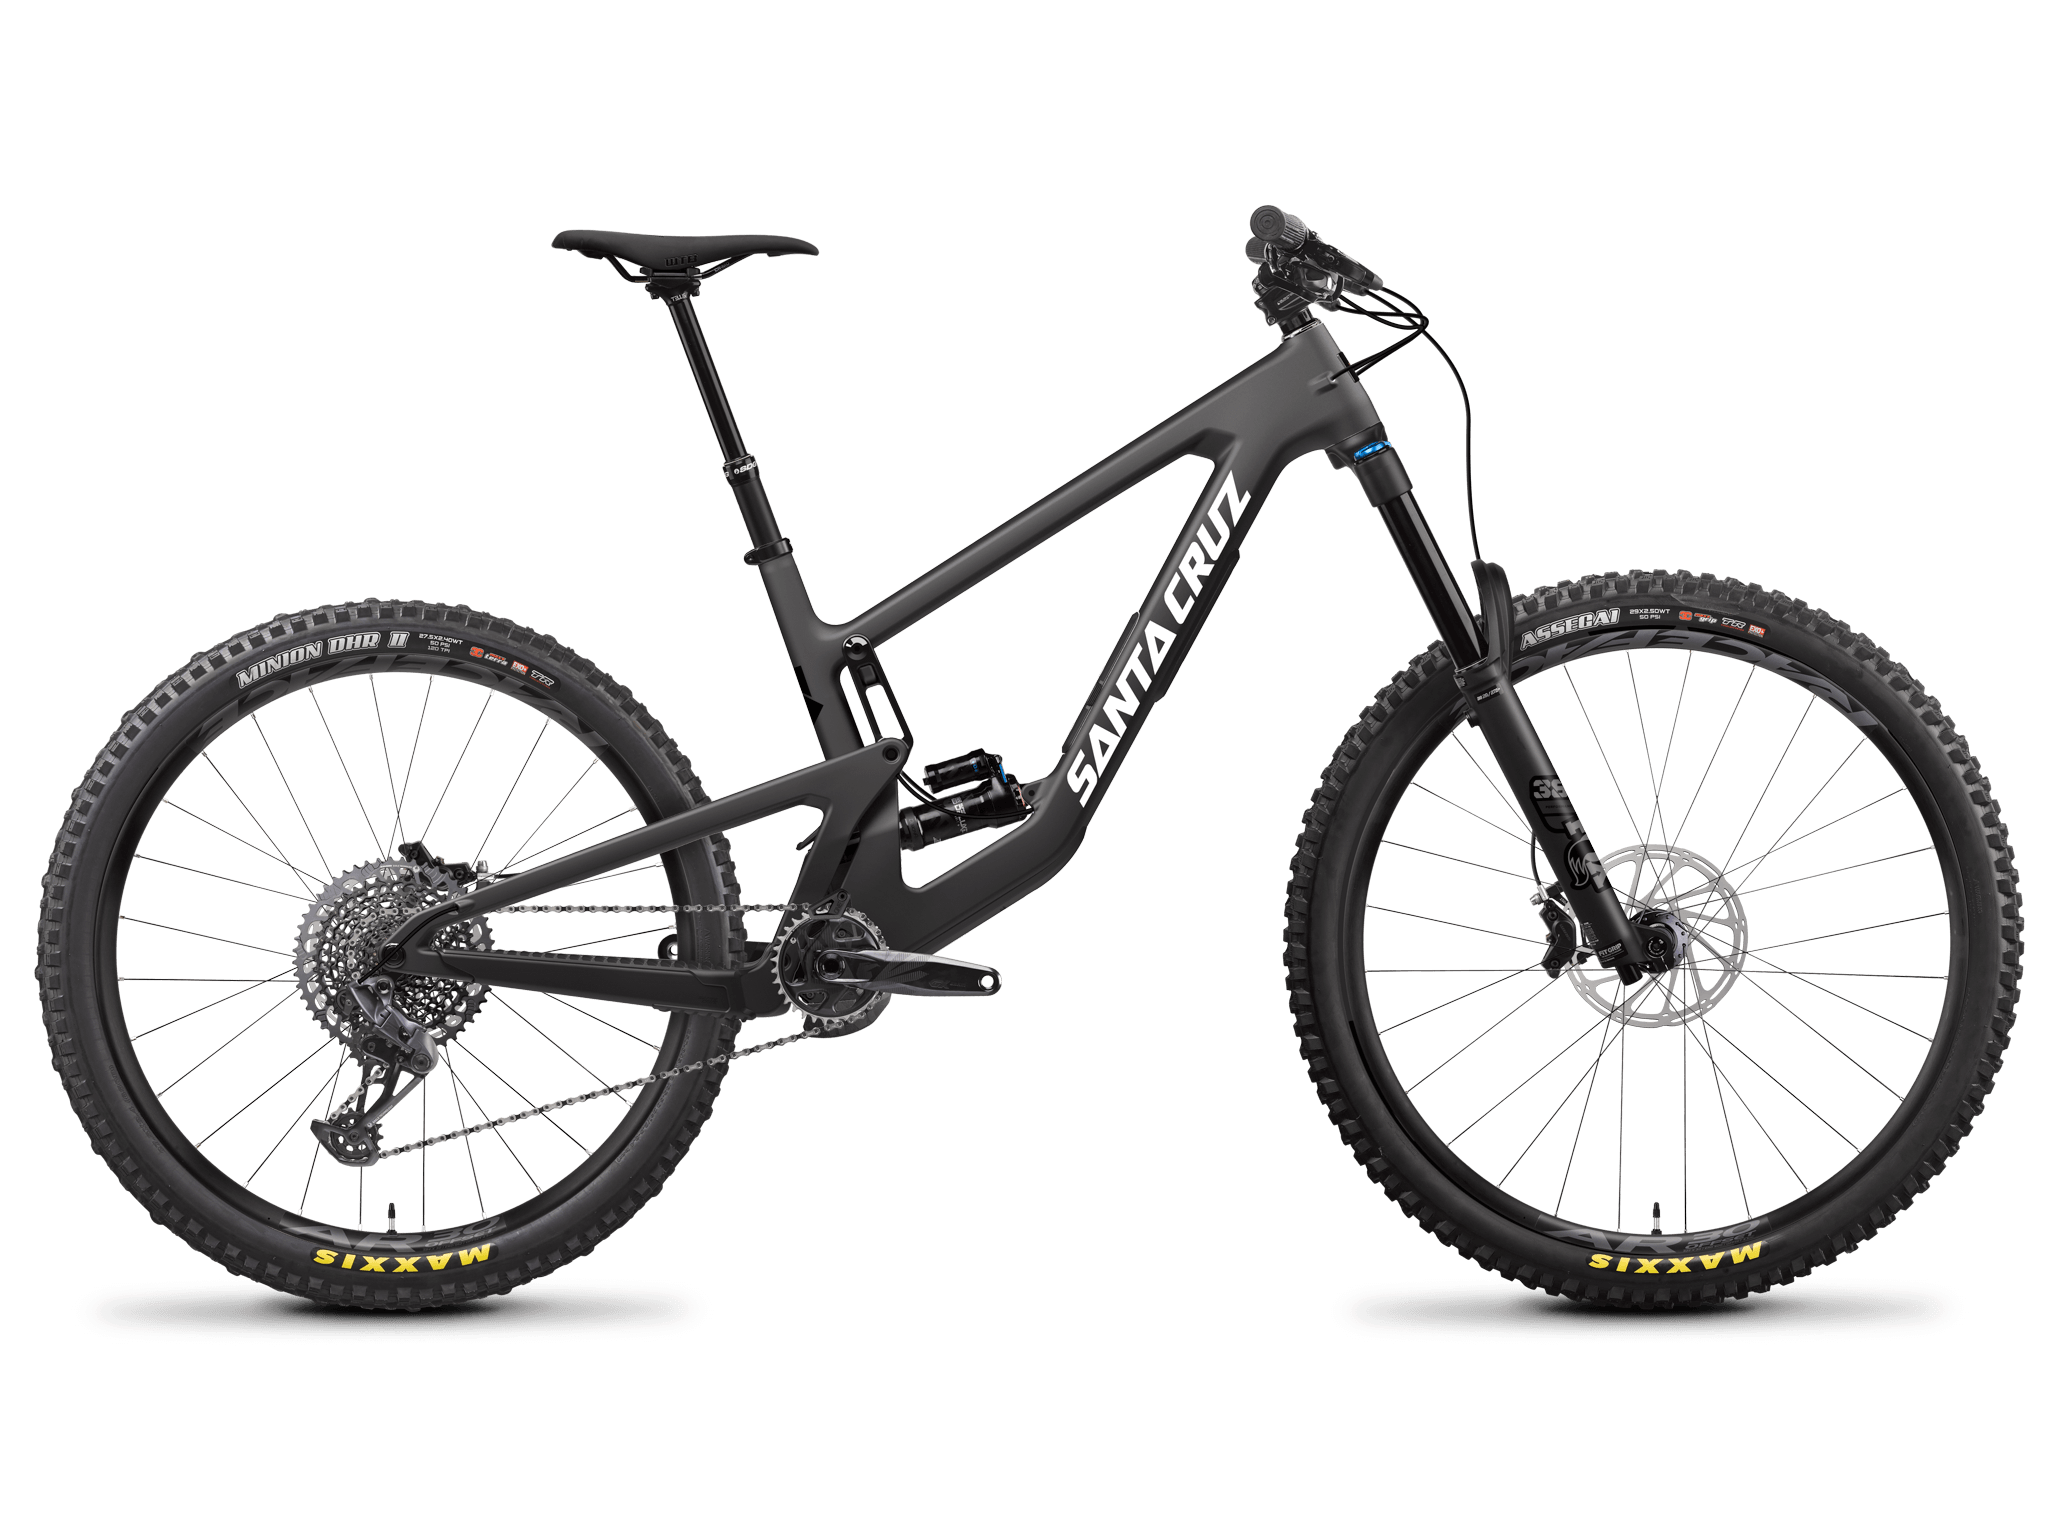 Nomad 6 full suspension mountain bike S kit